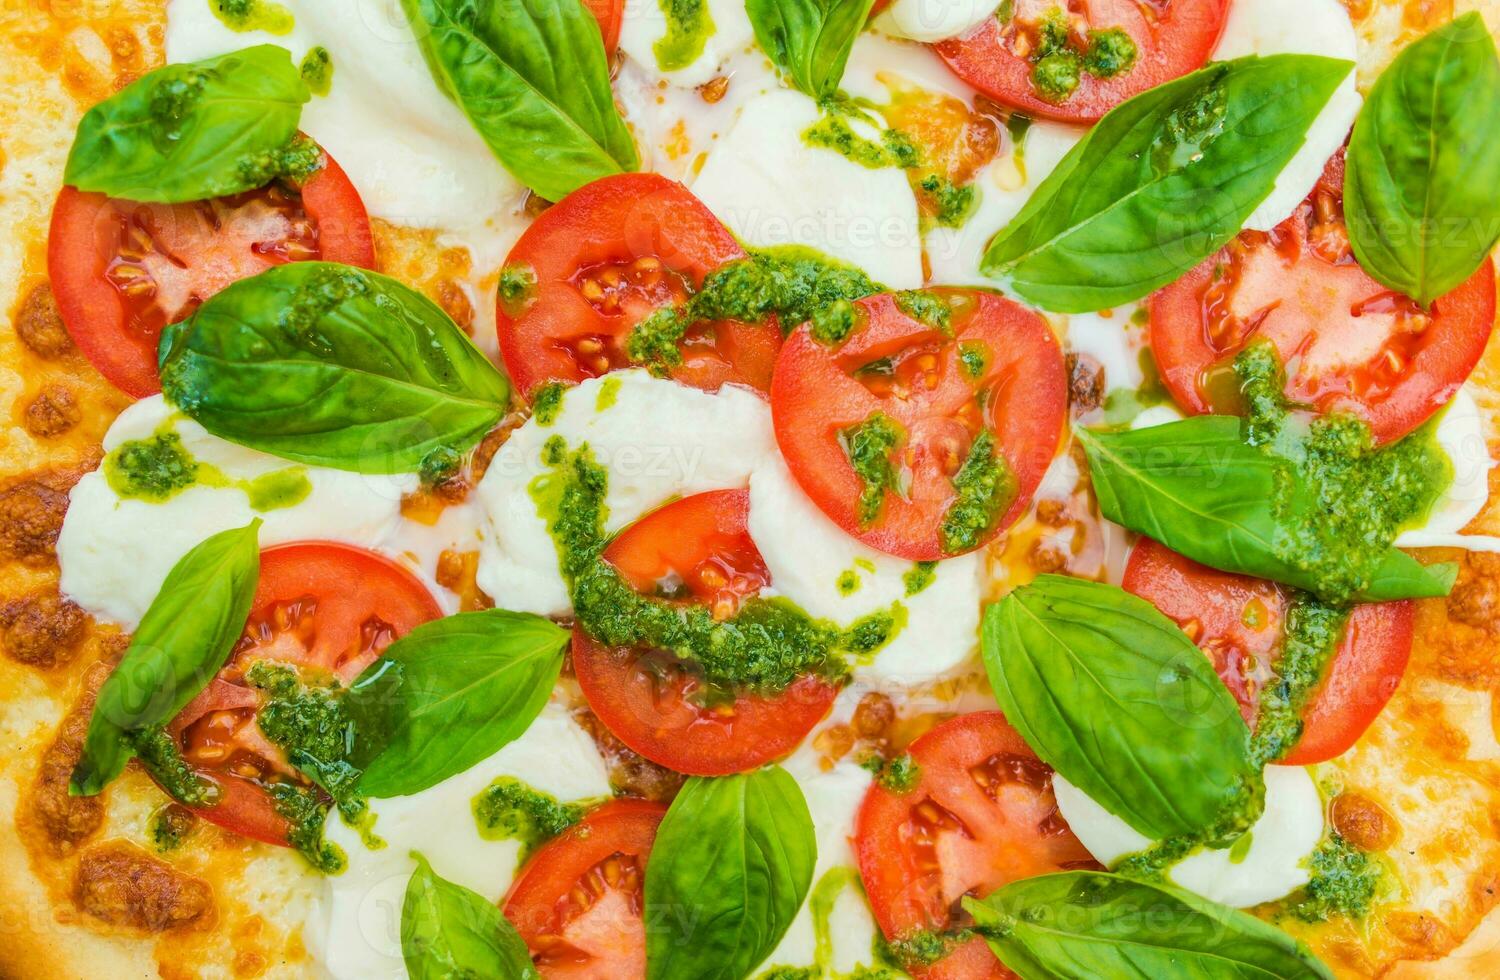 tomat pizza italiana foto